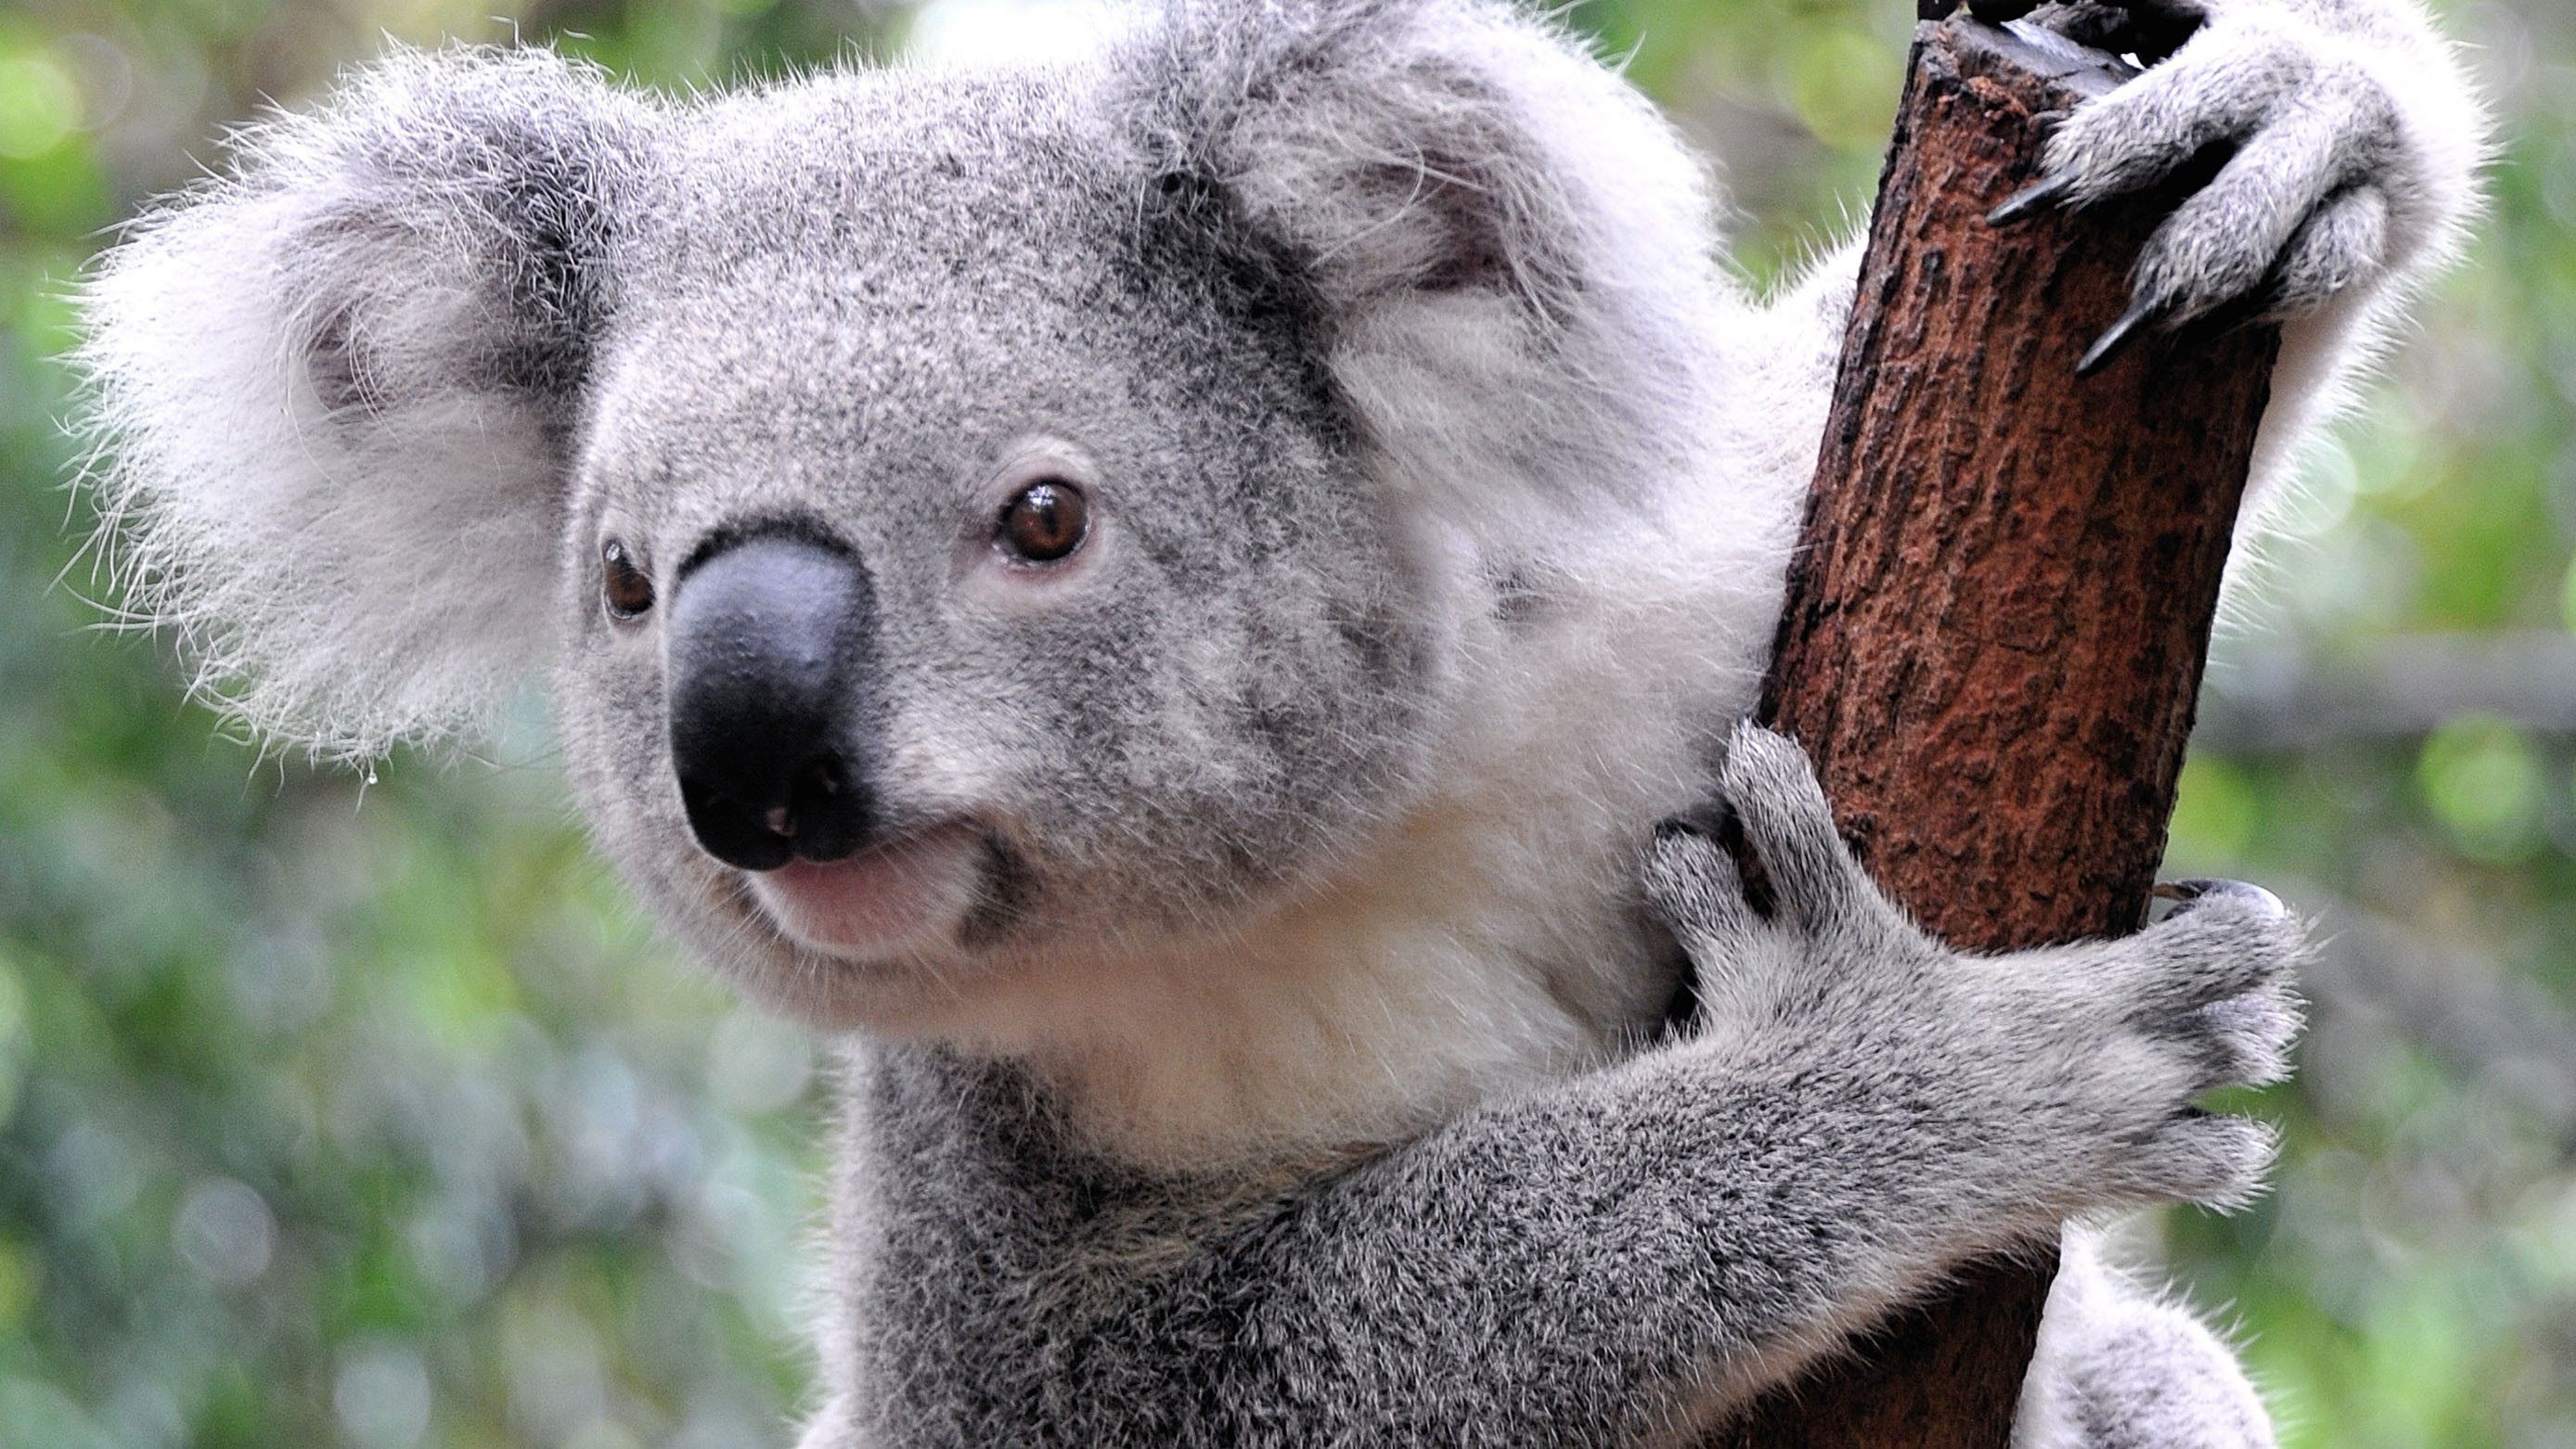 Koala wildlife sanctuary, Tree-dwelling wonders, Mother and baby koala, Koala cuteness overload, 2780x1570 HD Desktop